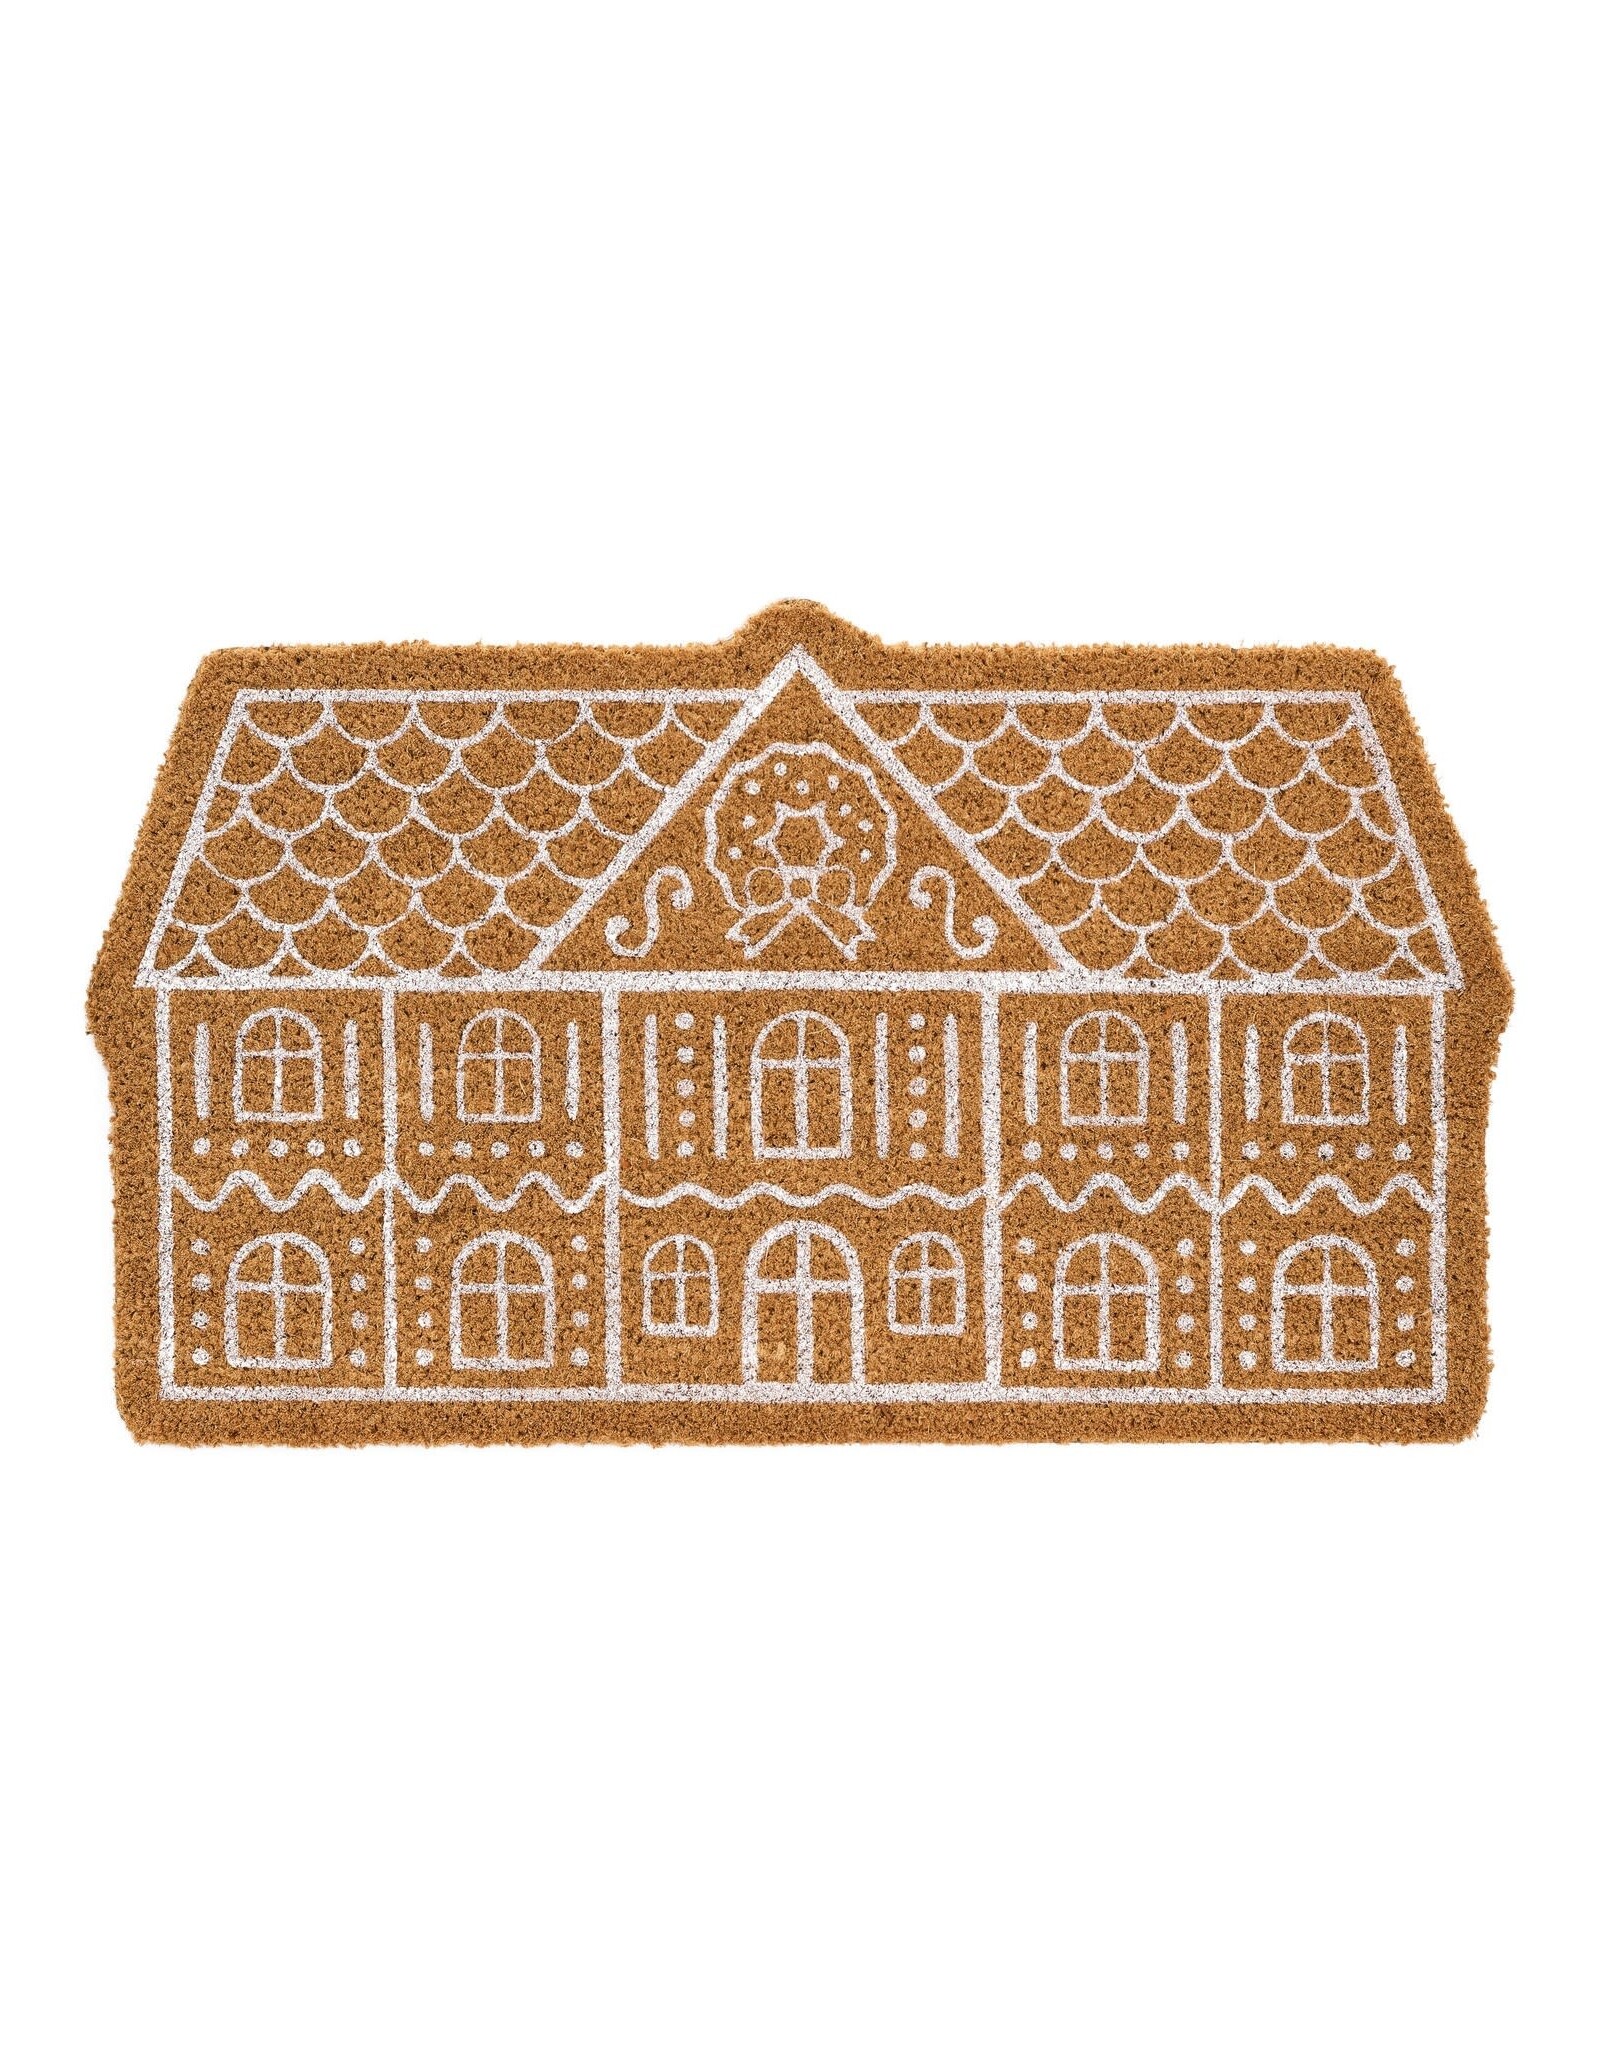 House Coir Doormat